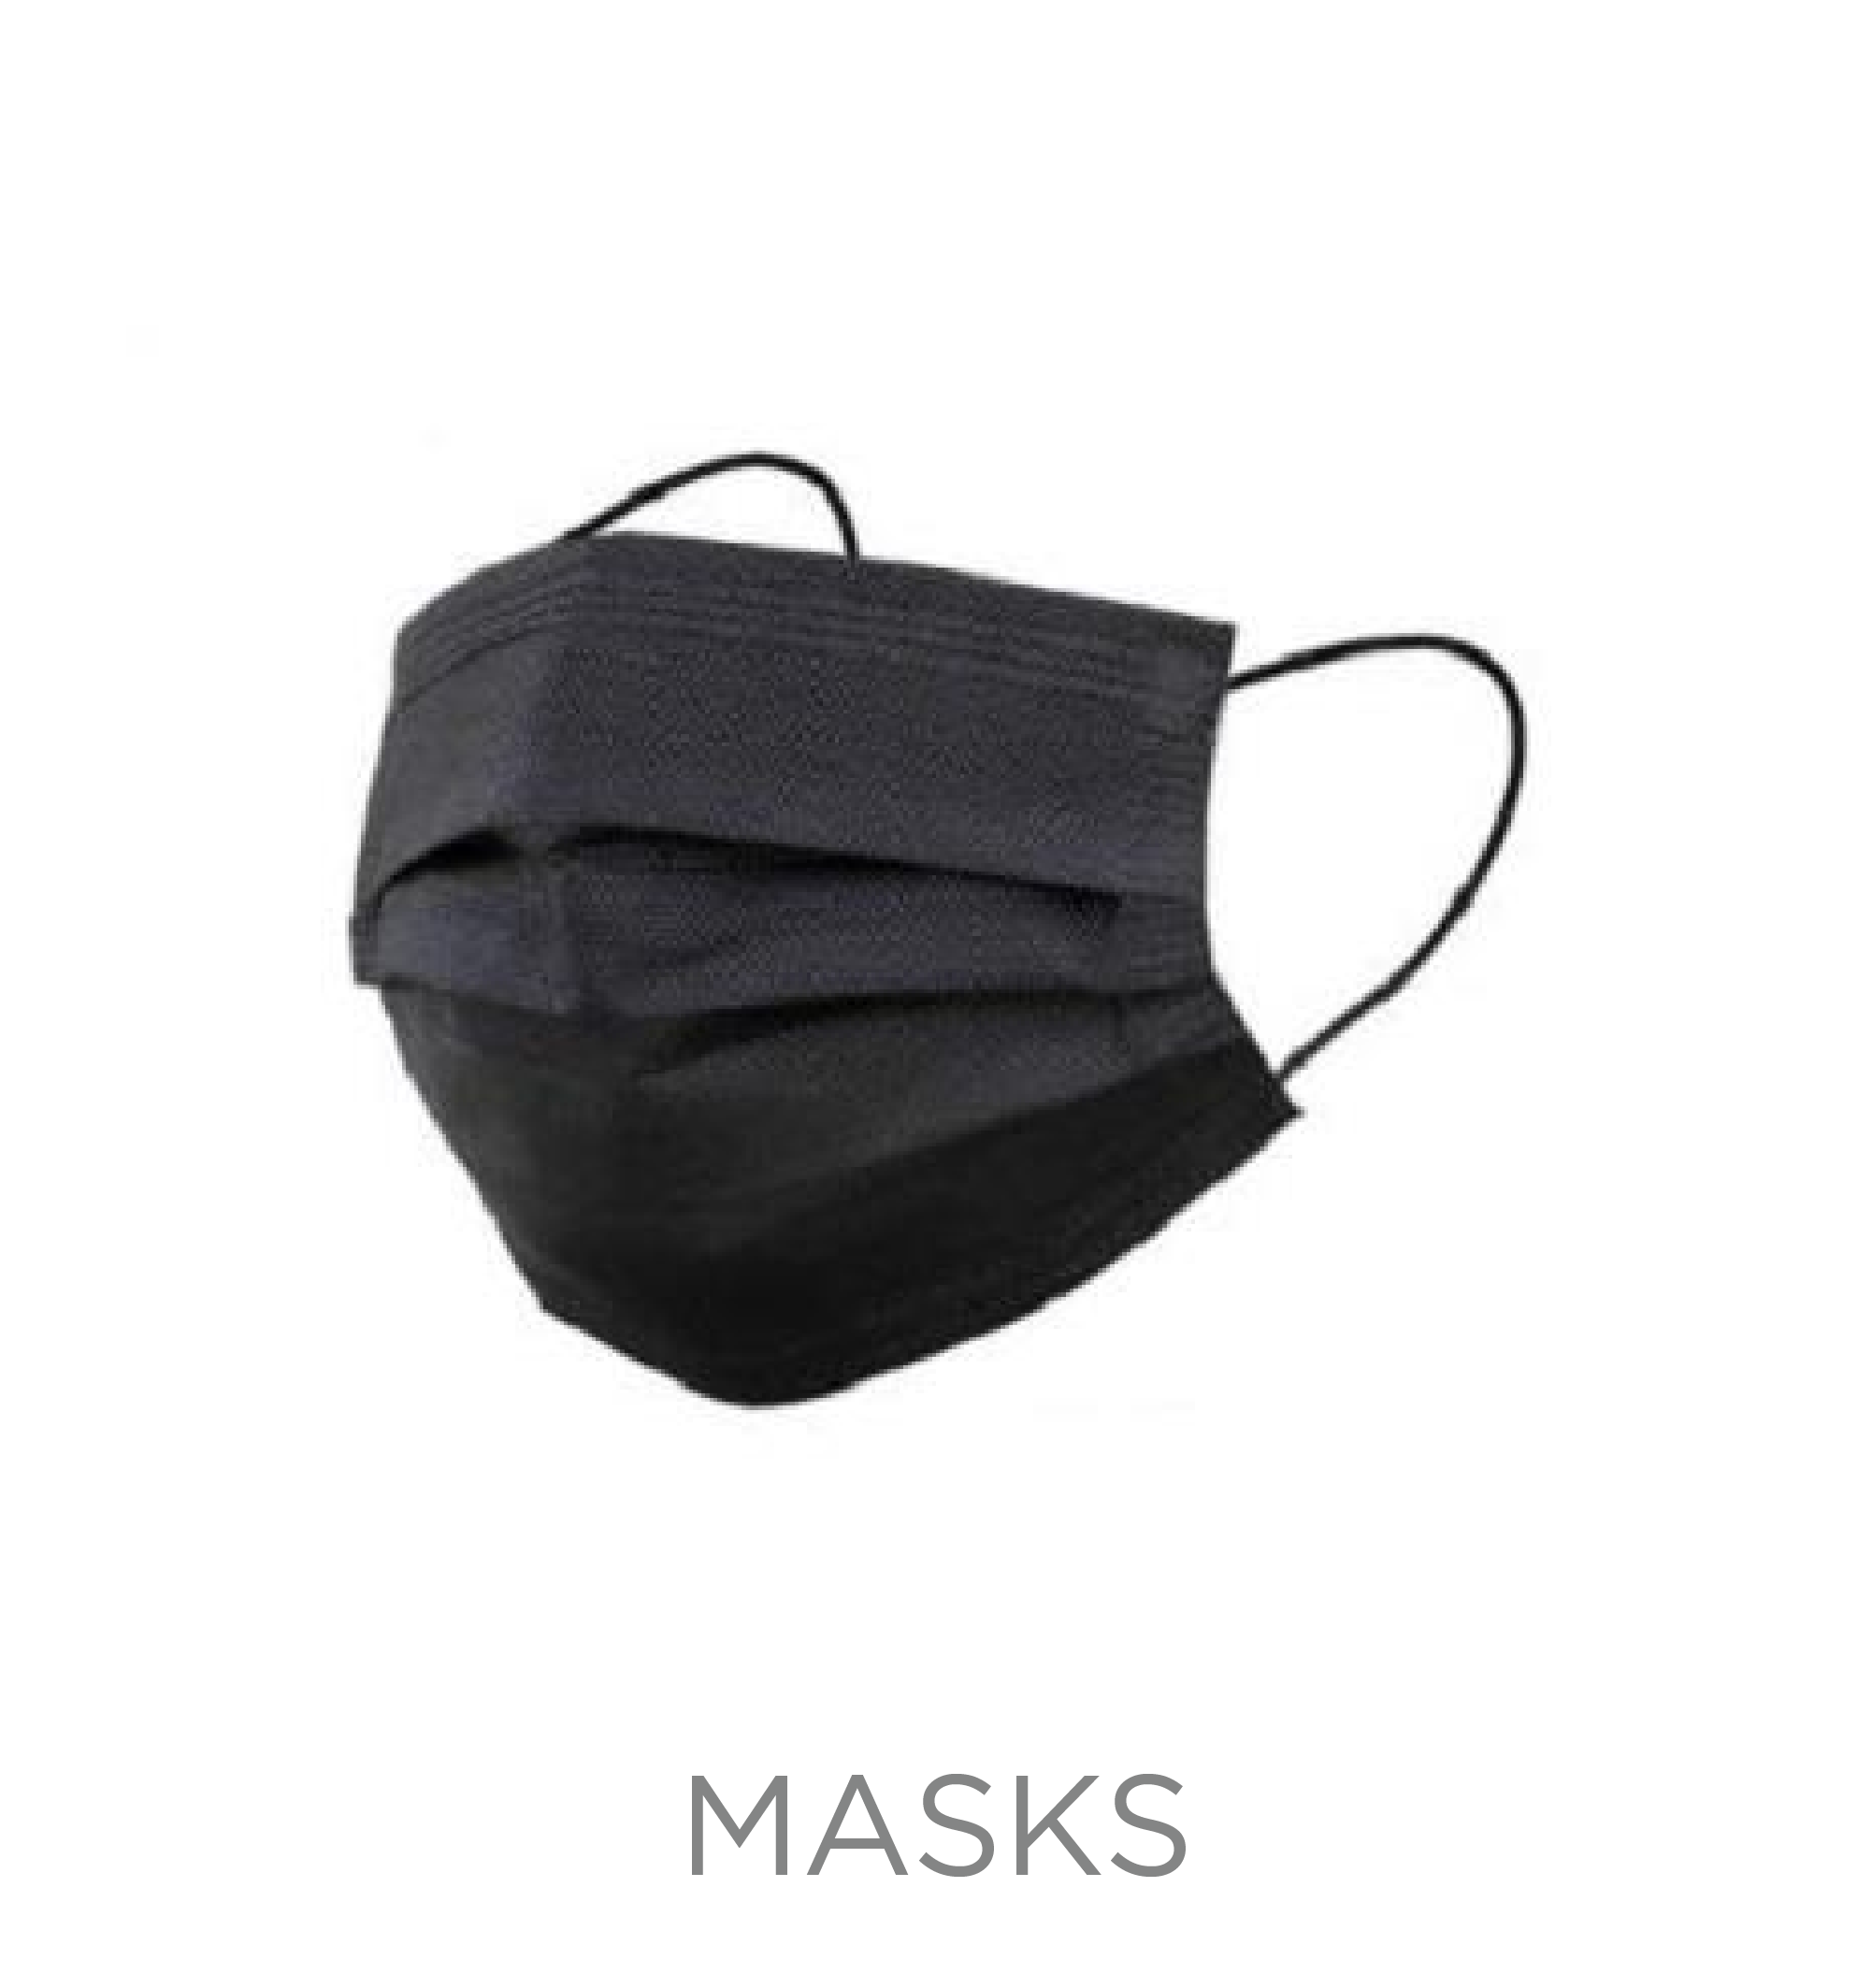 Masks - Holiday Season